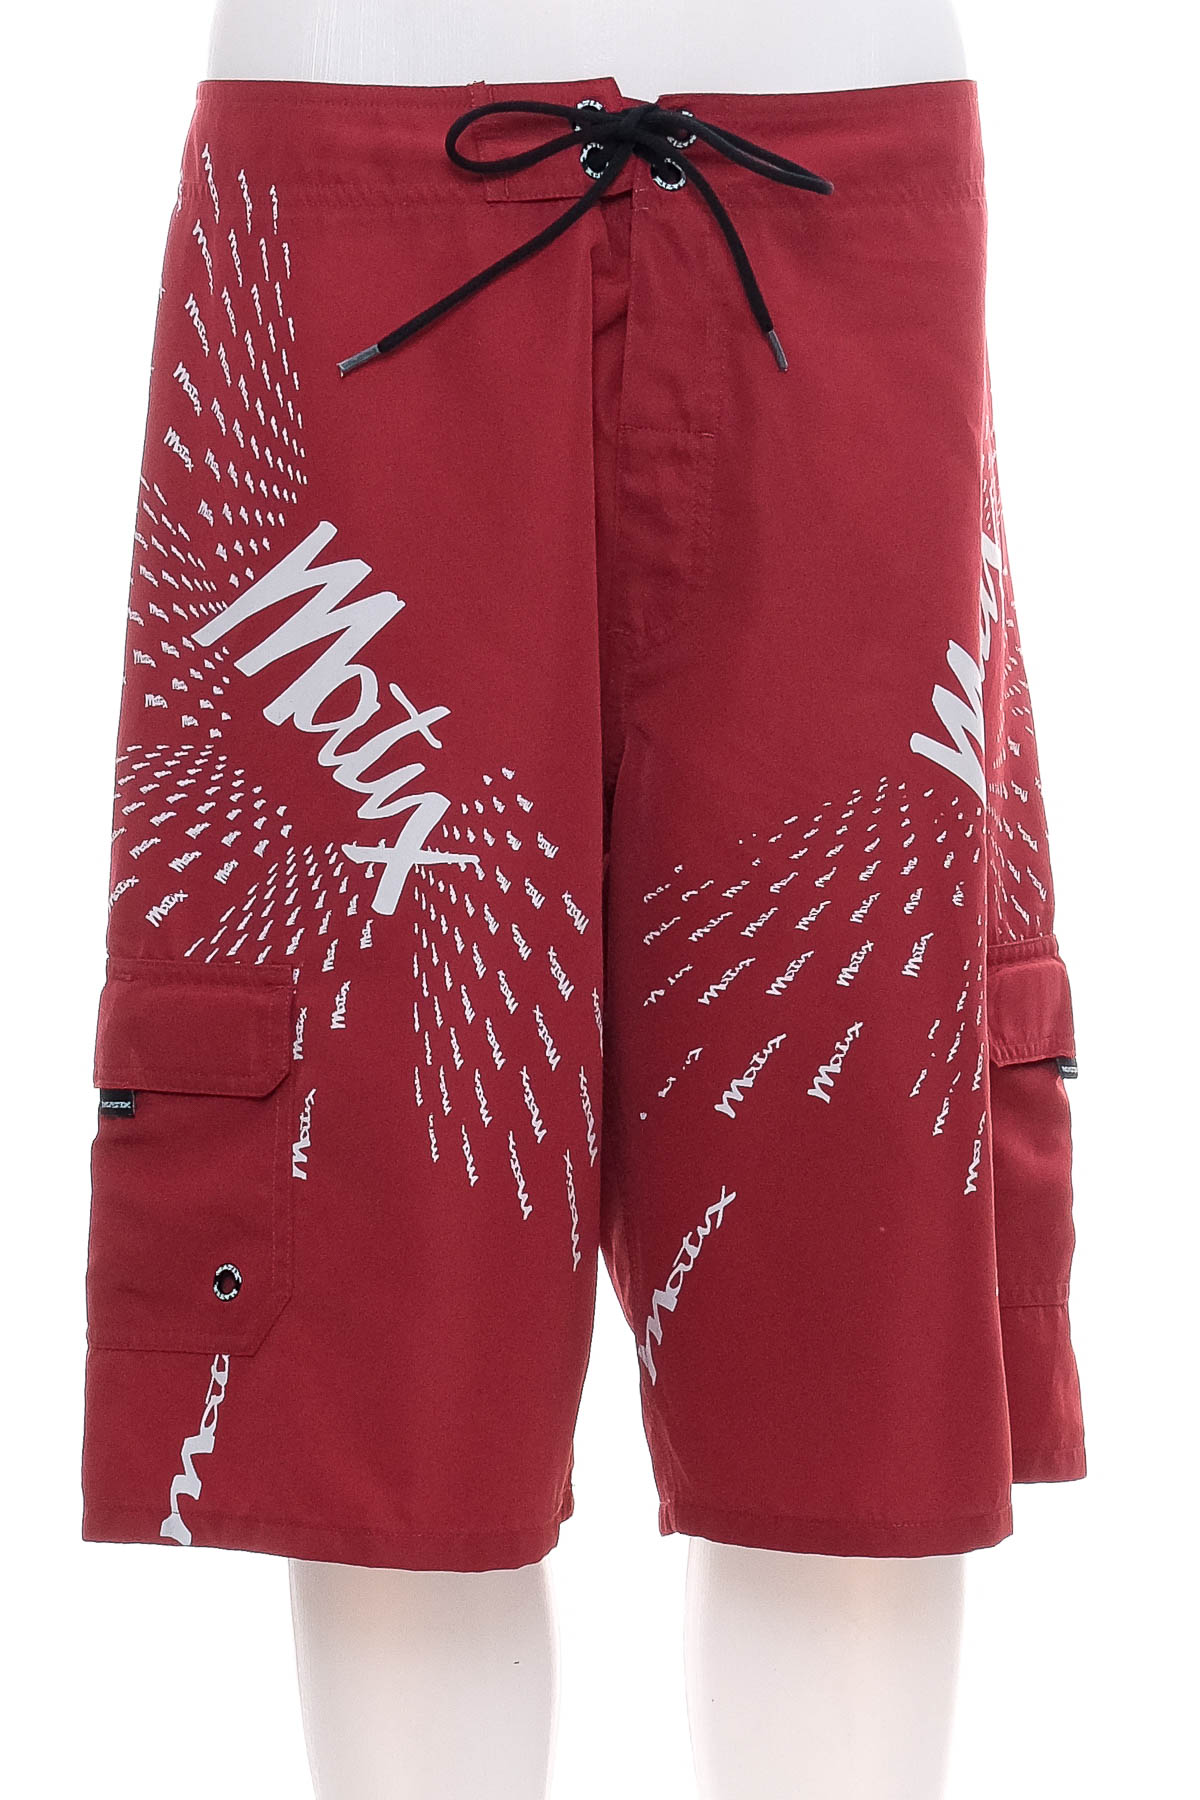 Men's shorts - Matix - 0